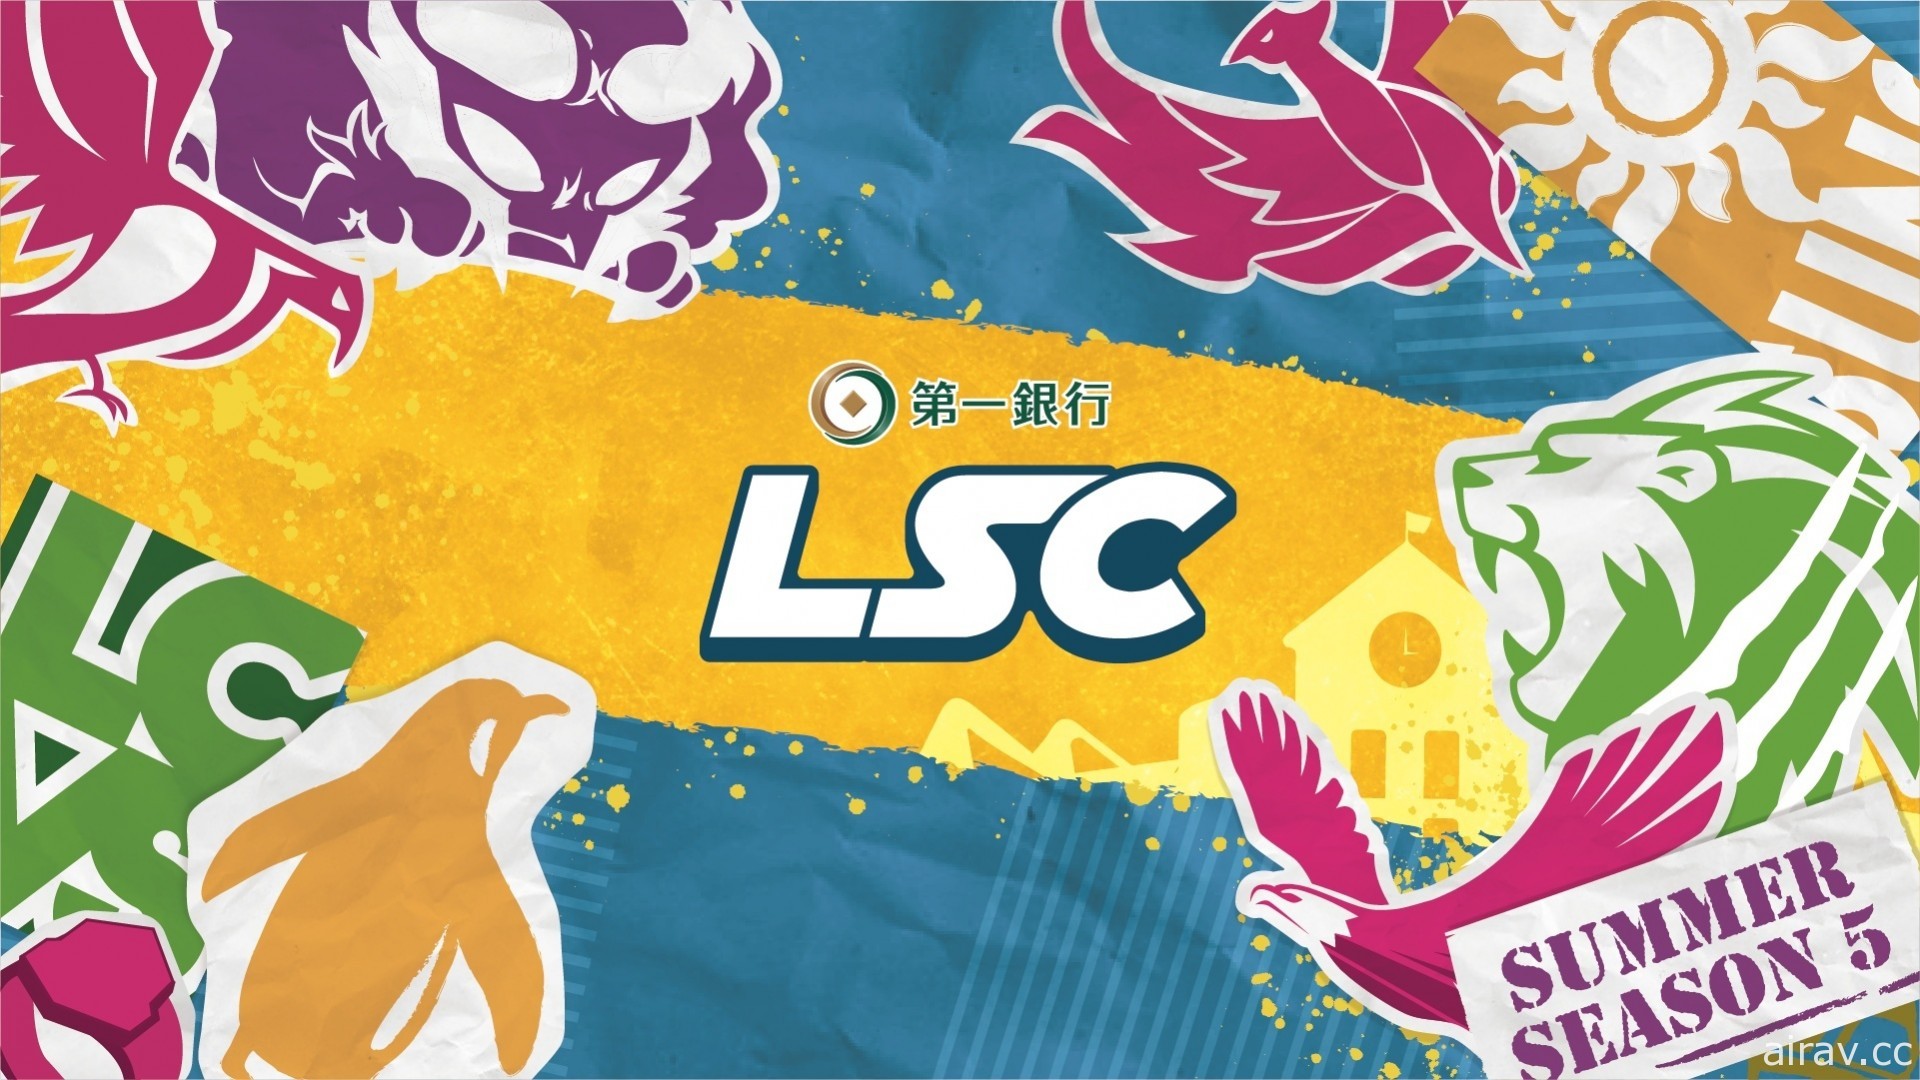 《英雄联盟》校园联赛 LSC 夏季公开赛开放报名